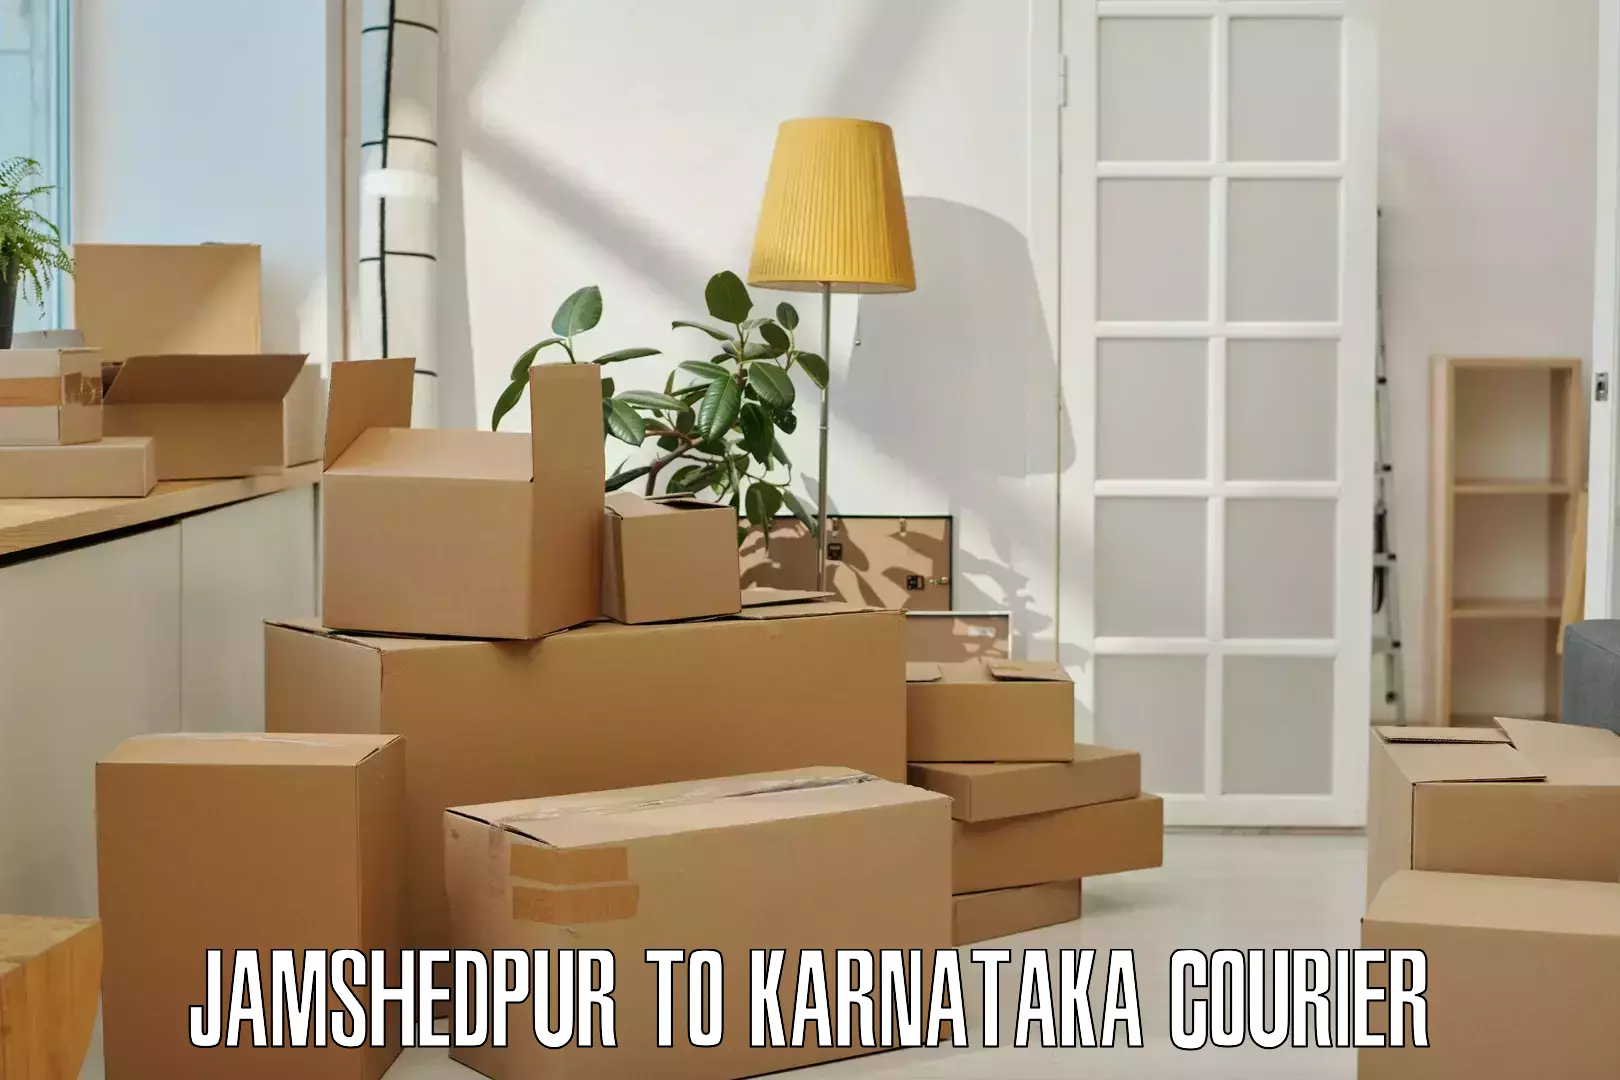 Weekend courier service Jamshedpur to Ranebennur